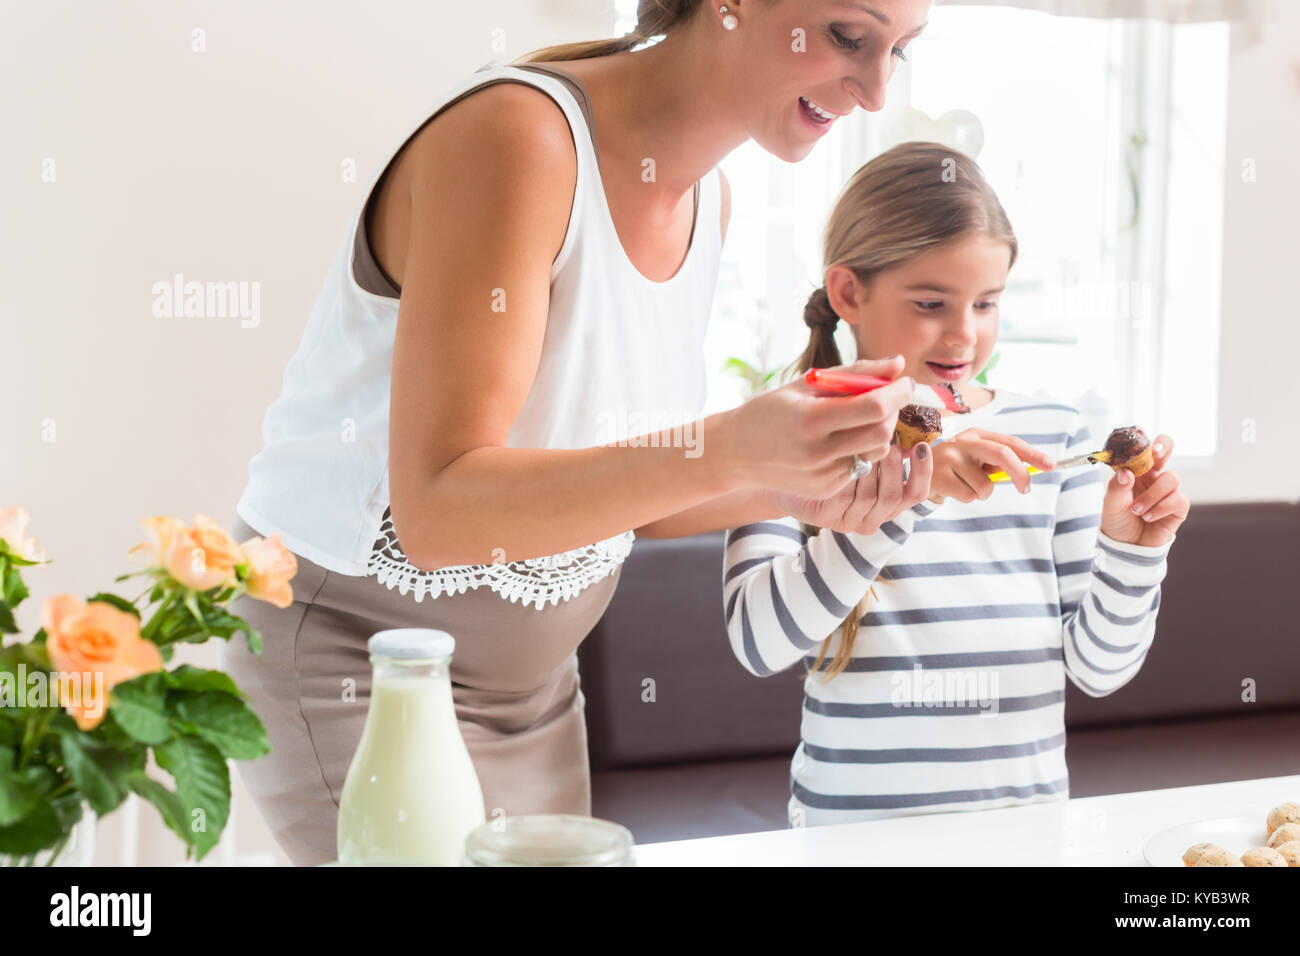 Mère enceinte baking cupcakes avec sa fille Banque D'Images